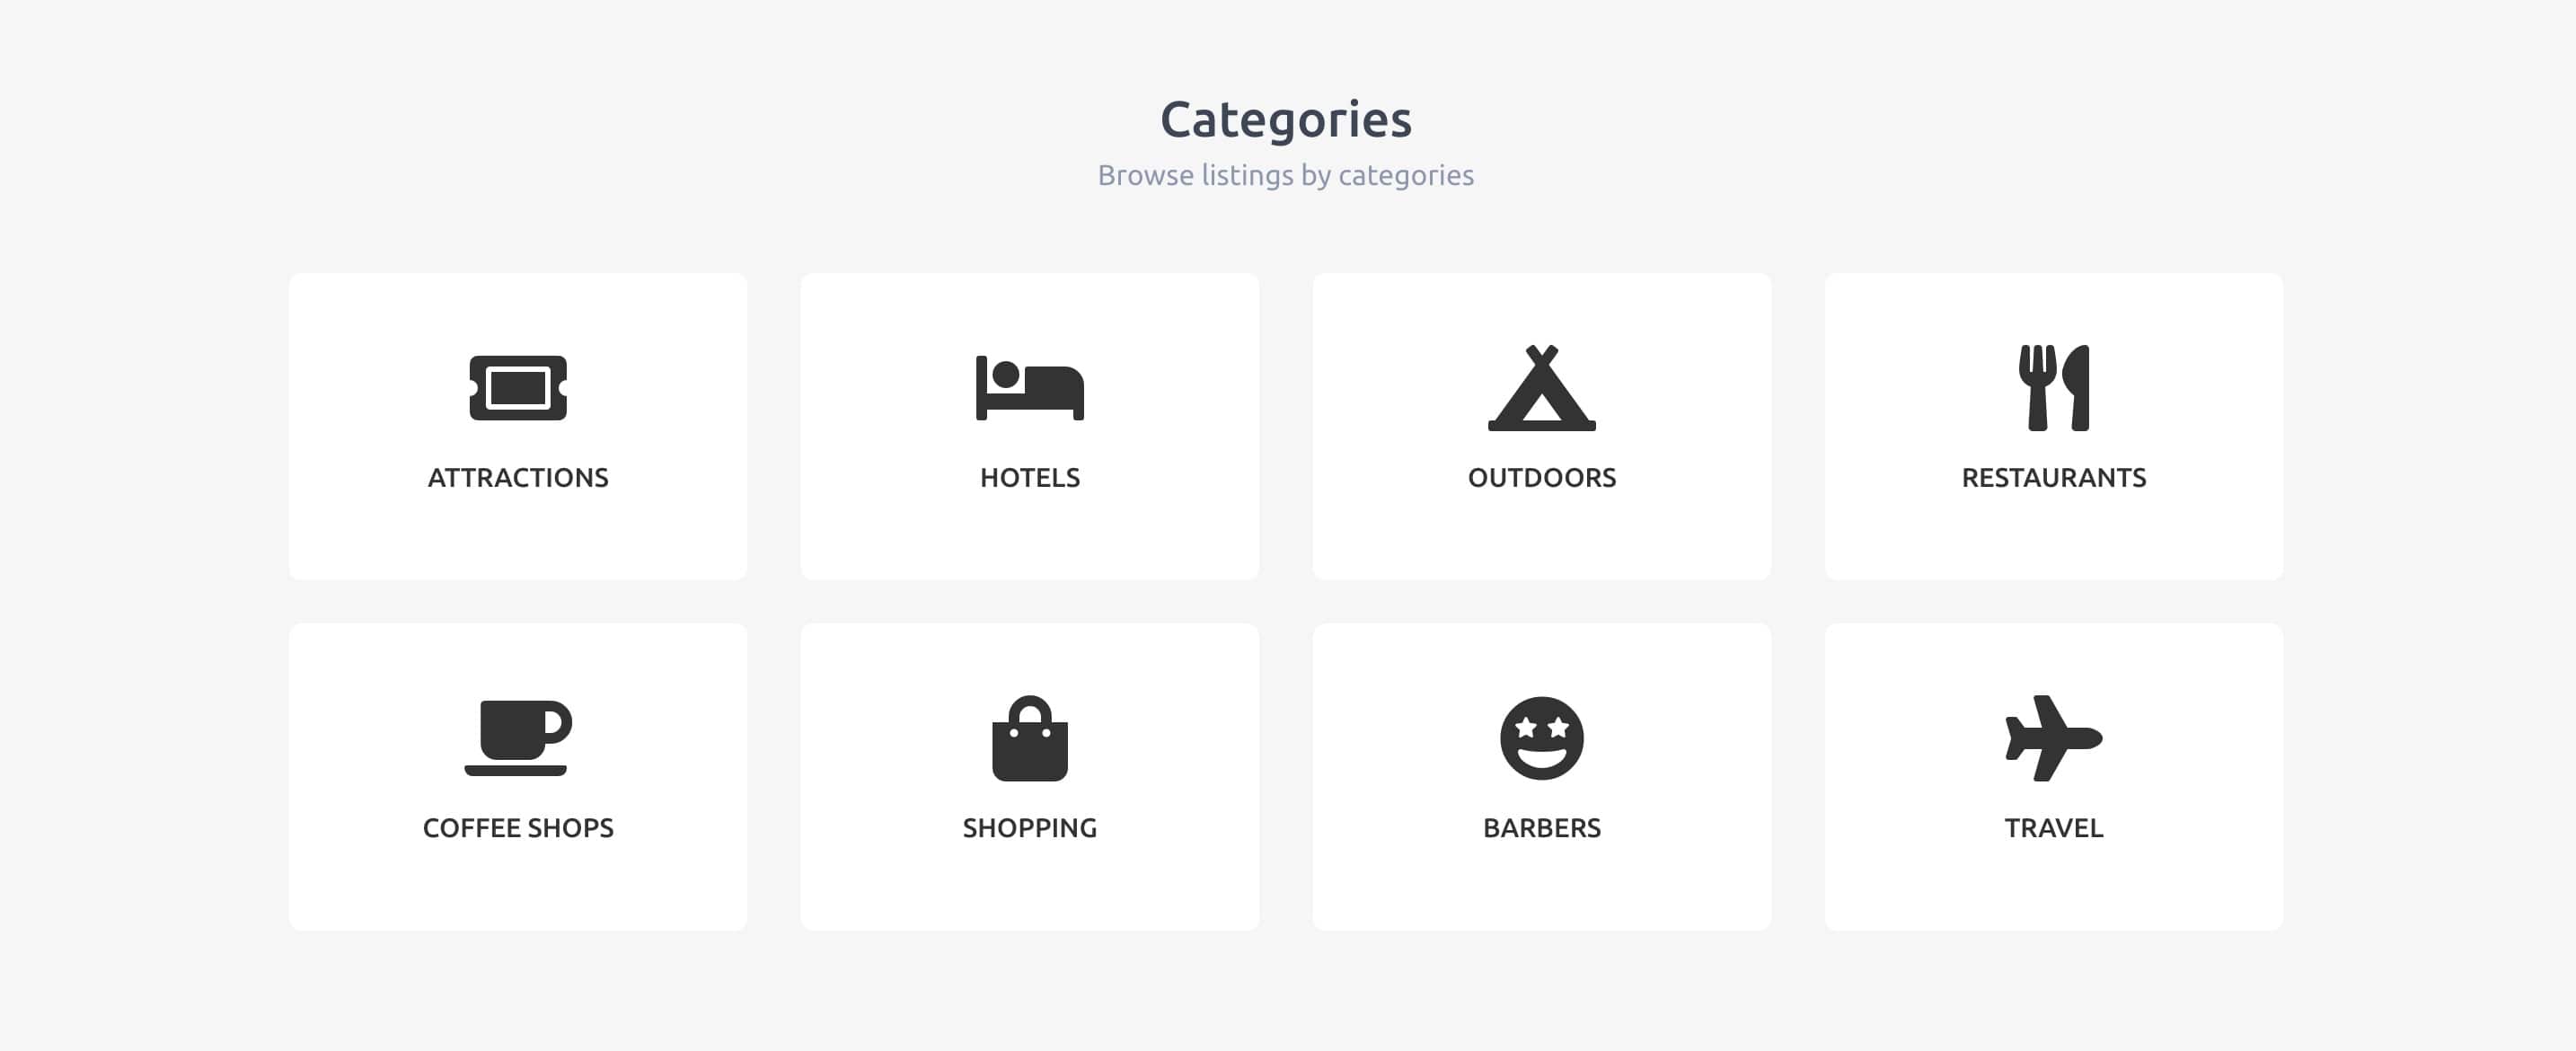 categories-grid-homepage.jpg